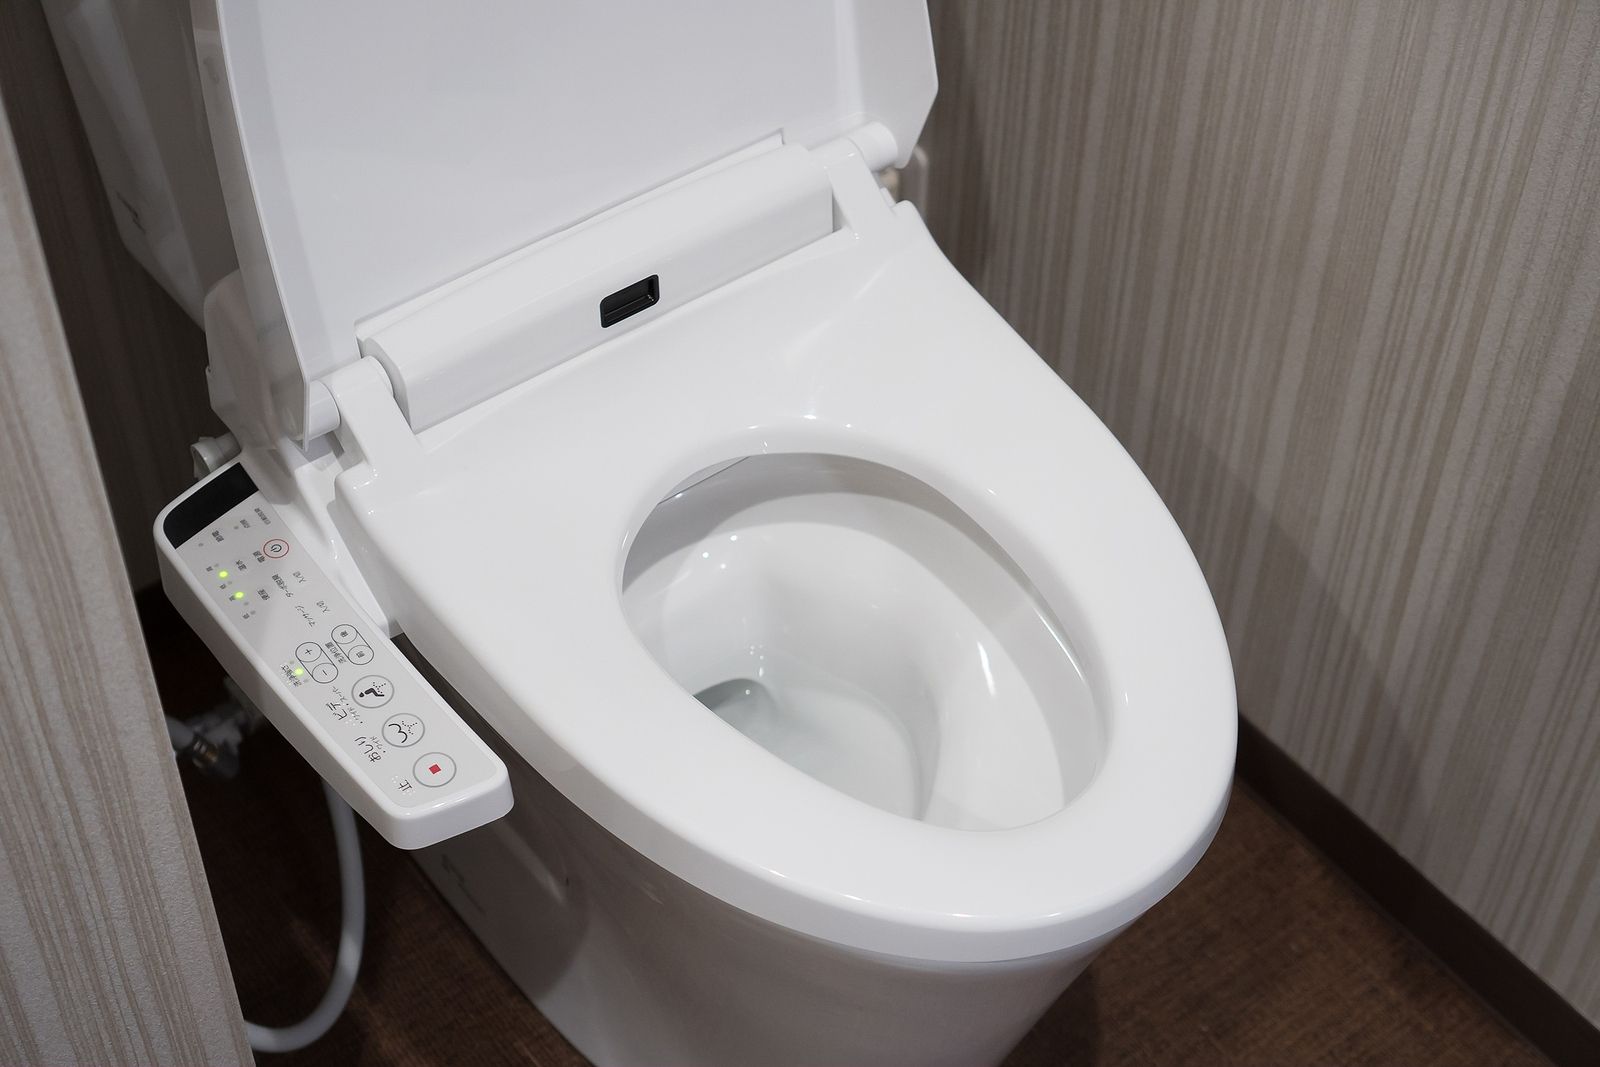 https://www.65ymas.com/uploads/s1/47/15/71/bigstock-modern-high-tech-toilet-with-e-342512476.jpeg